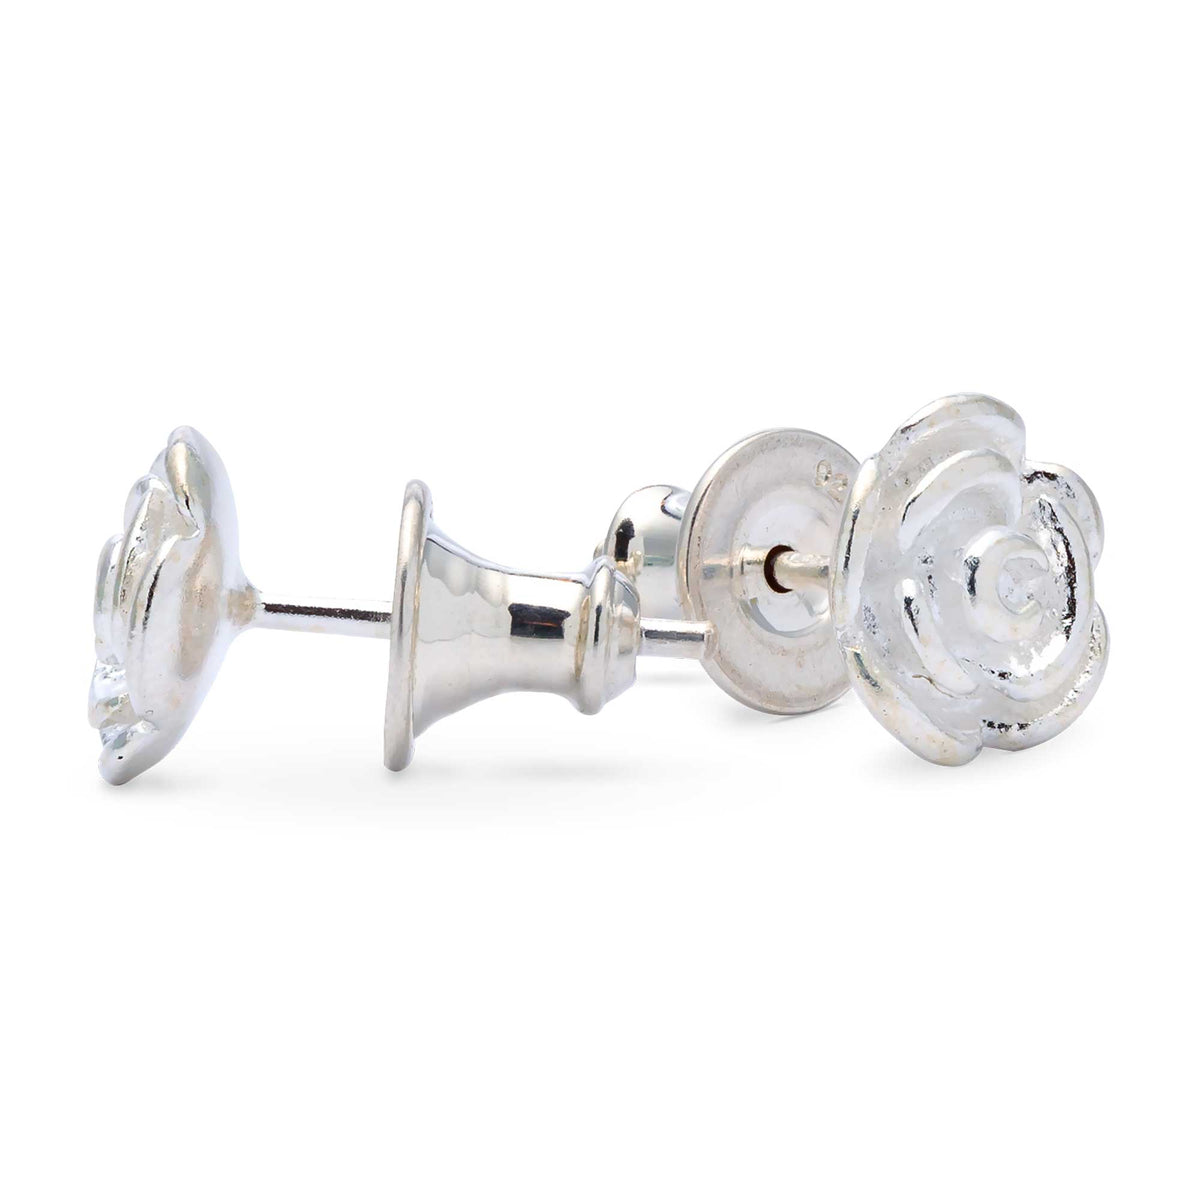 Solid silver rose flower stud earrings Scarlett Jewellery